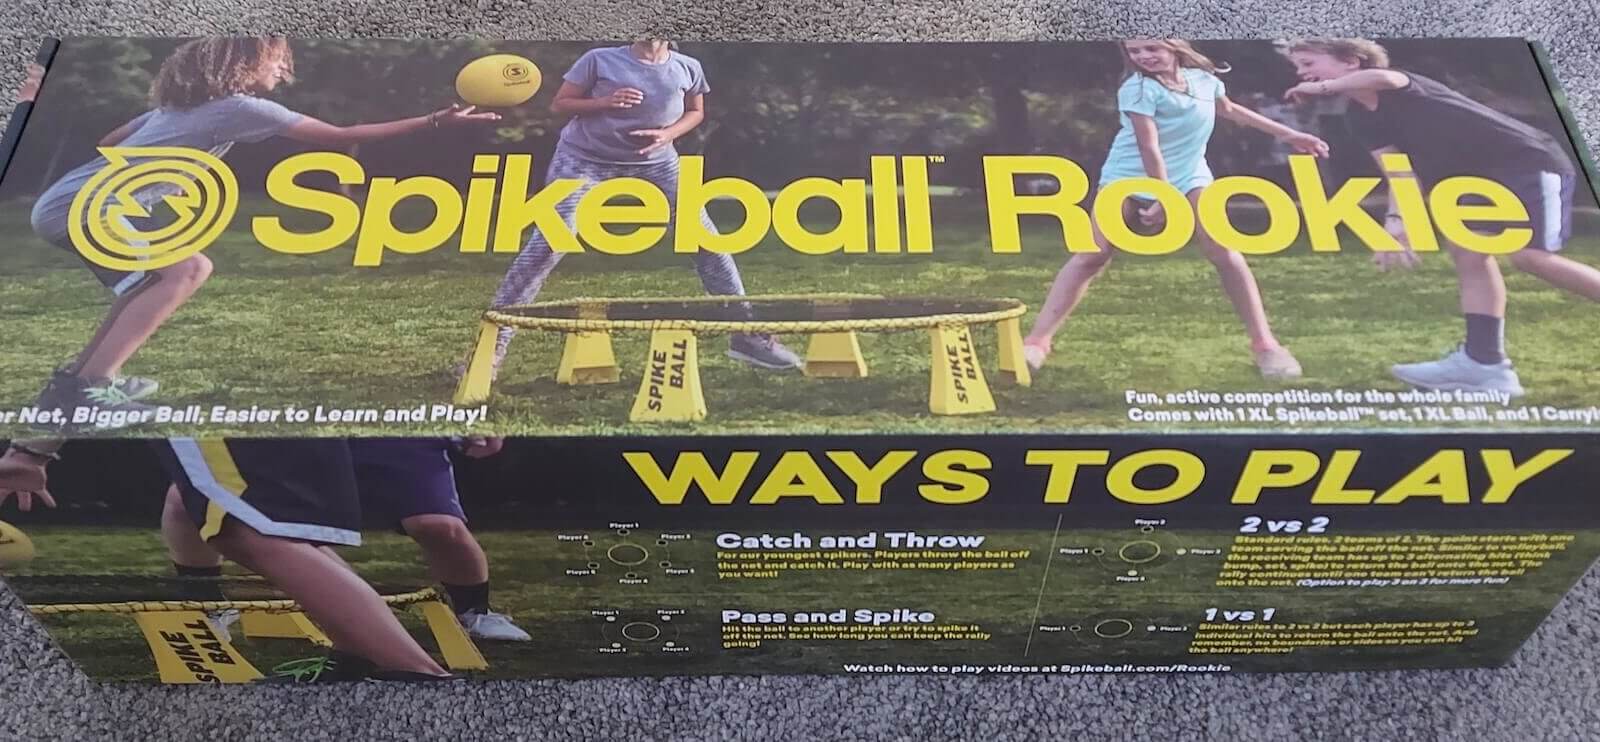 Testbericht: Spikeball Rookie Set für Kinder